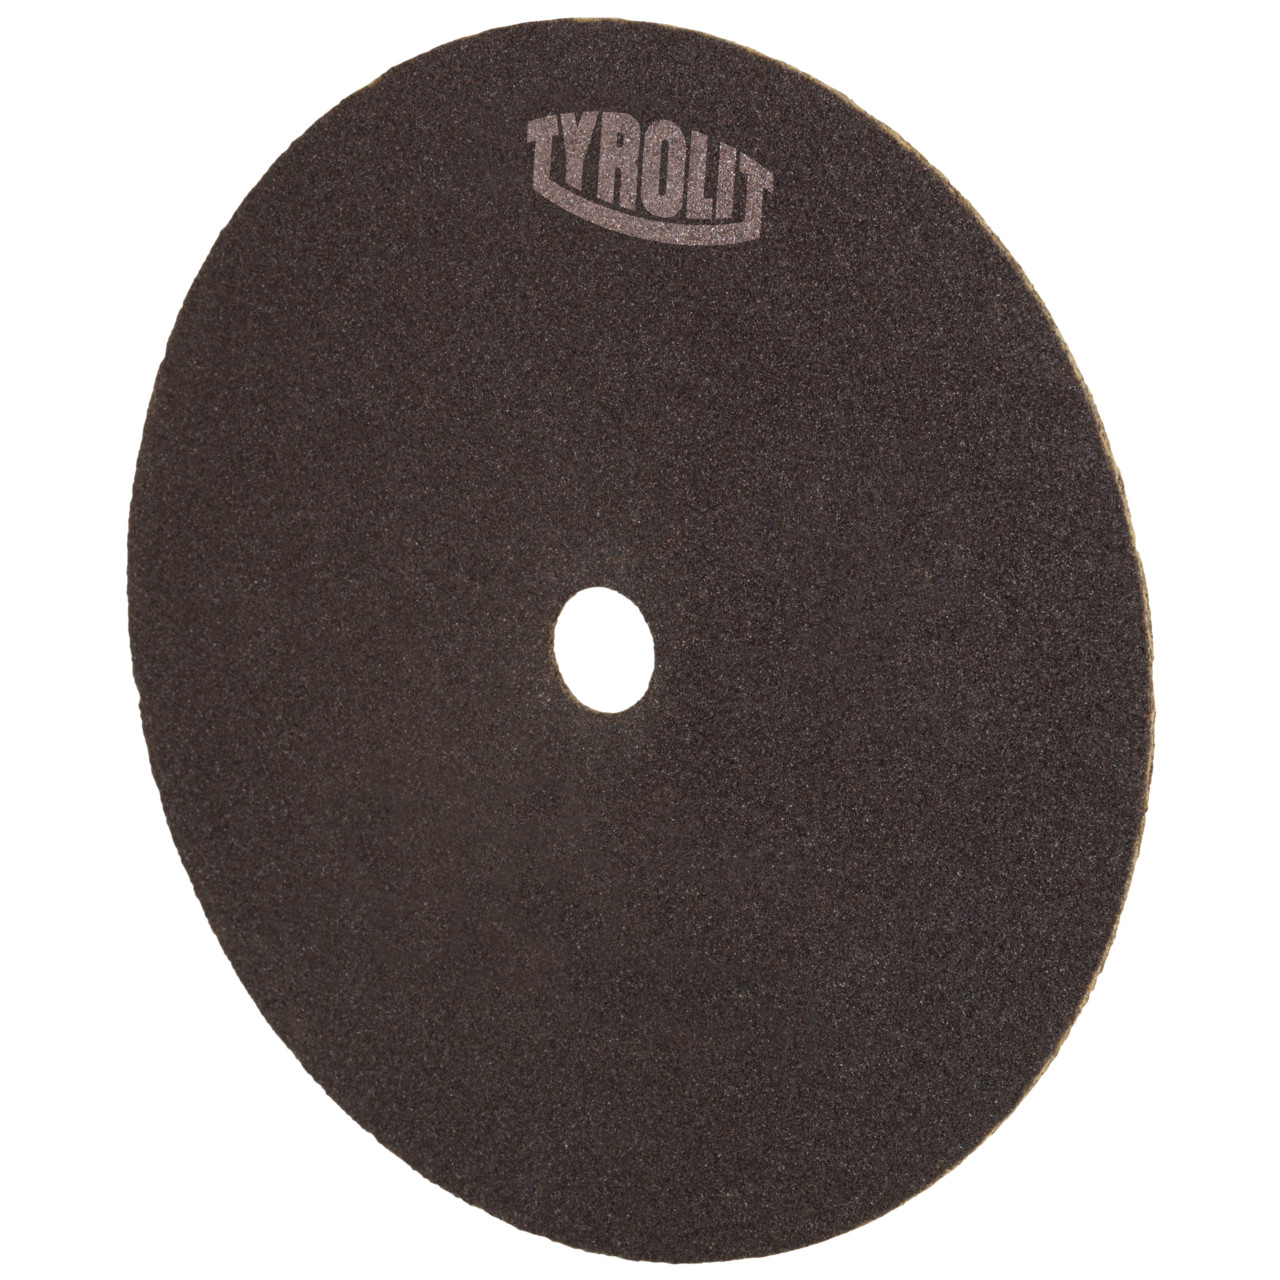 Disco de corte TYROLIT para corte y afilado de sierras DxDxH 250x1,5x25,4 Para acero y HSS, forma: 41N - versión recta (disco de corte no tejido), Art. 373520